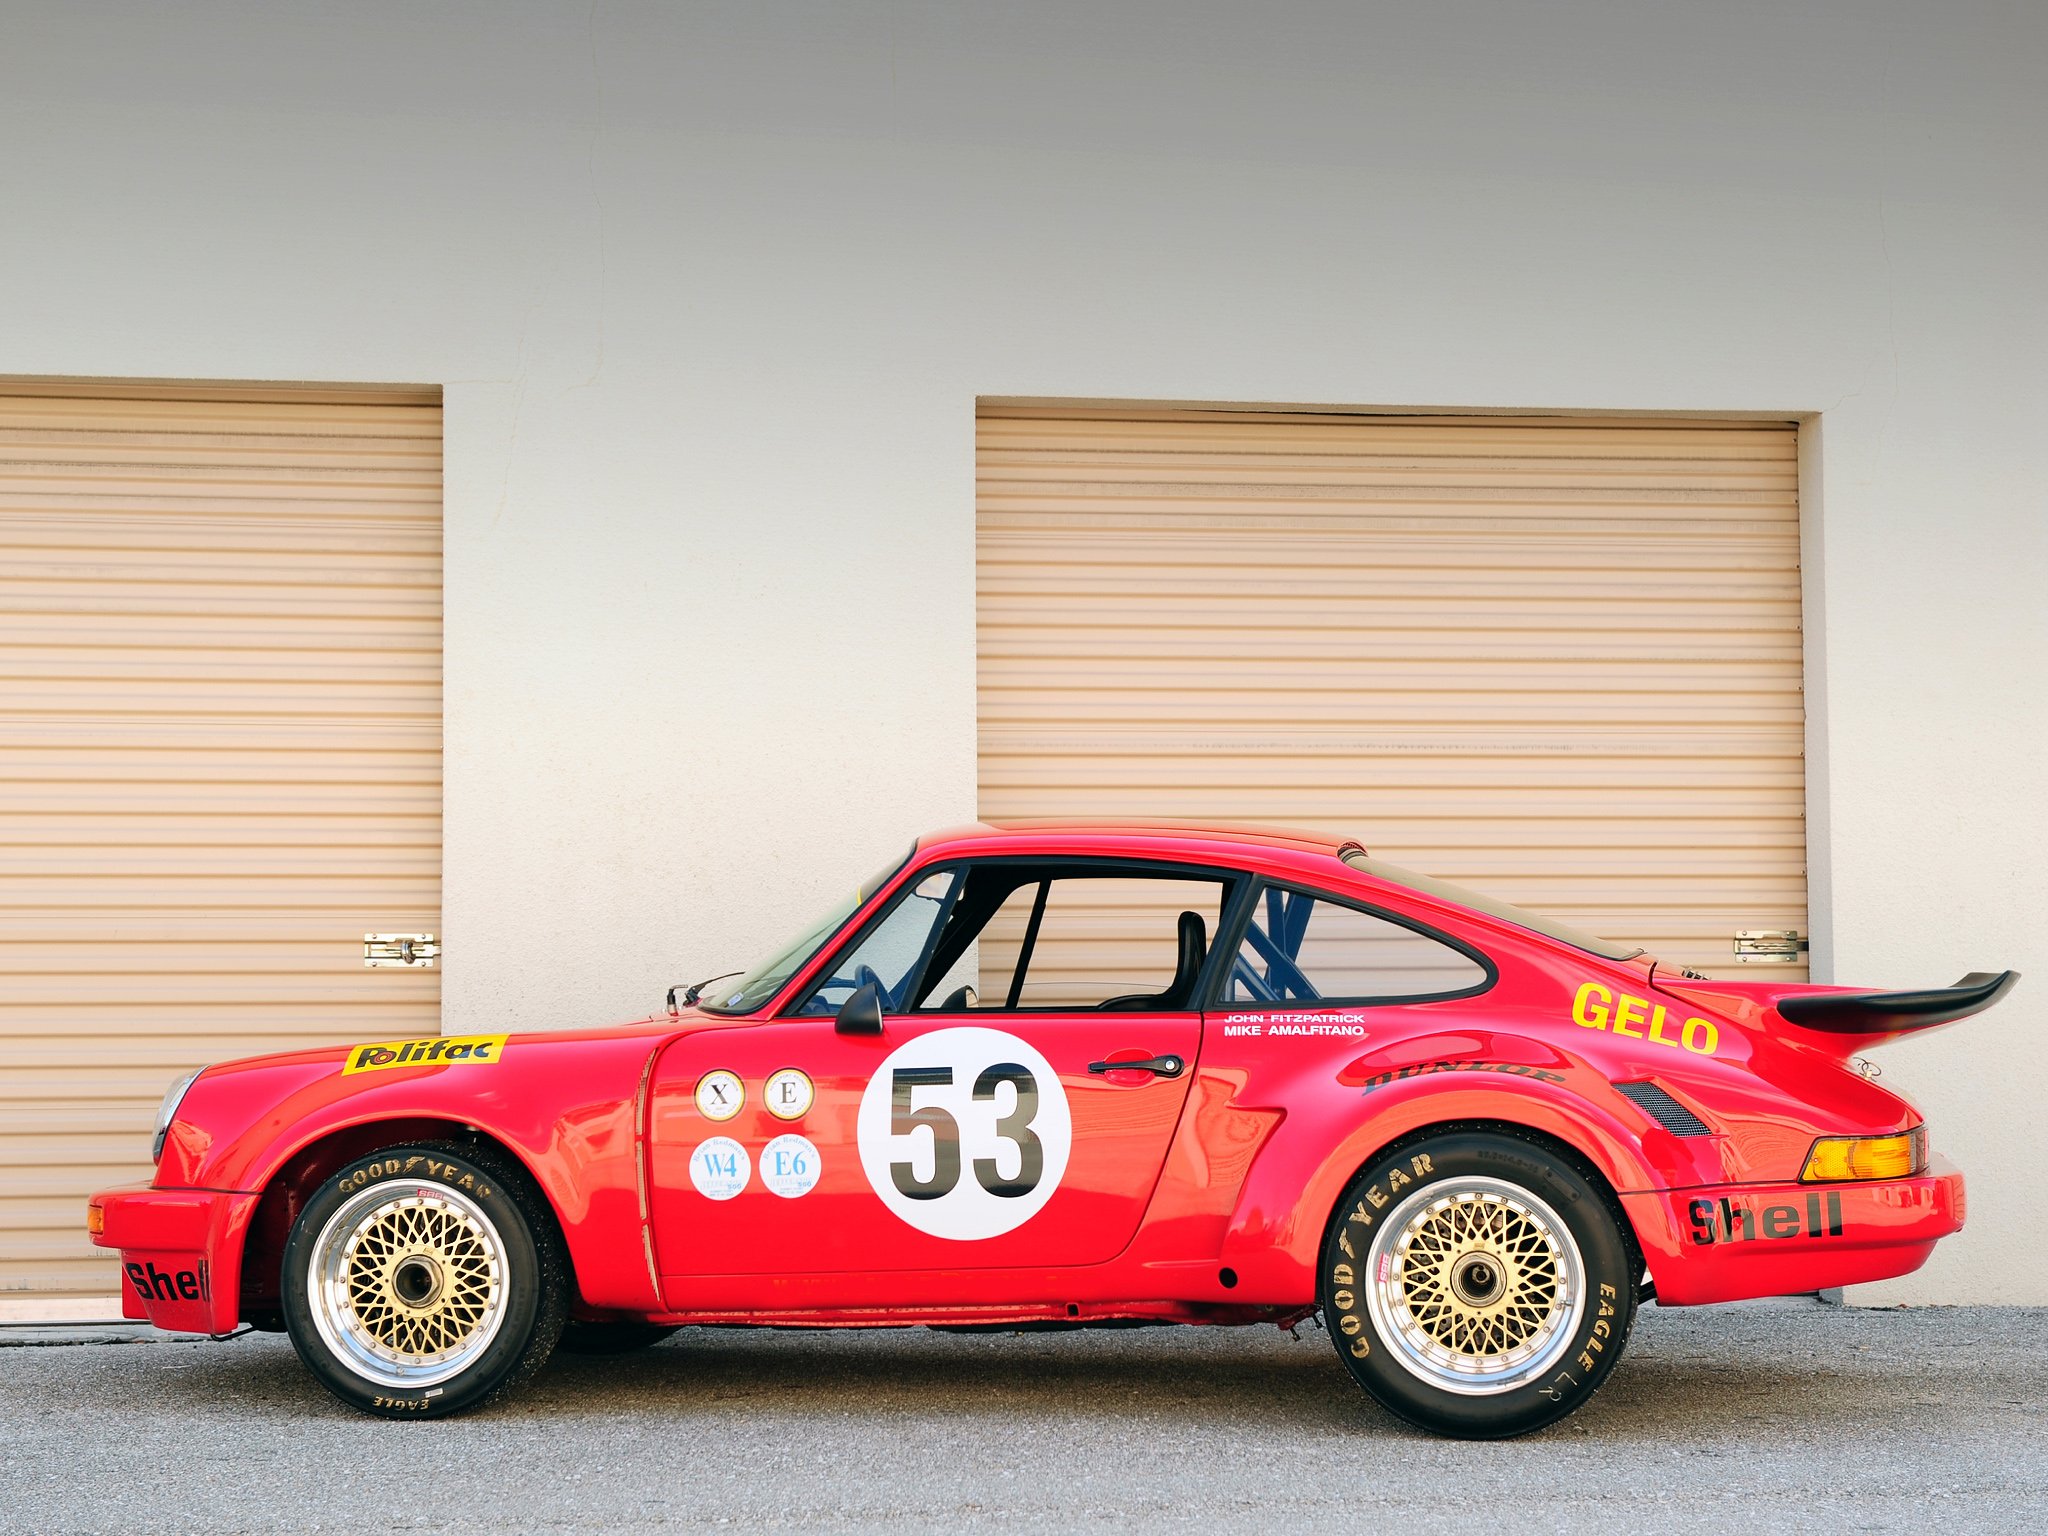 1974 77, Porsche, 911, Carrera, Rsr, 3 0, Coupe, Race, Racing, Supercar Wallpaper